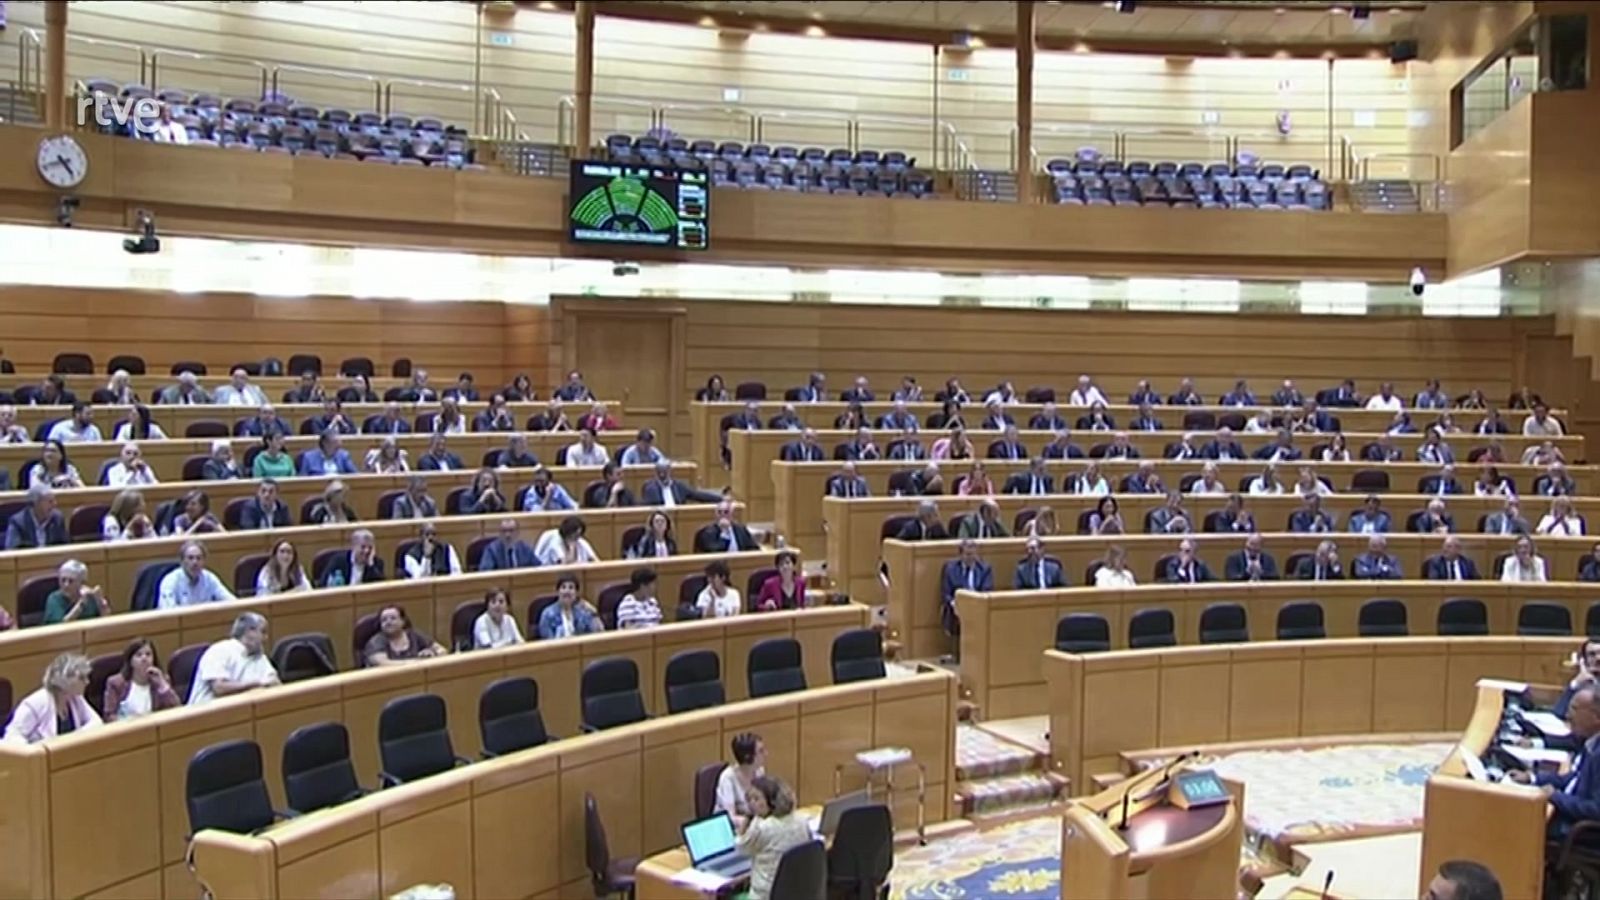 Parlamento - Conoce el Parlamento - Los presupuestos de las Cortes - 01102022